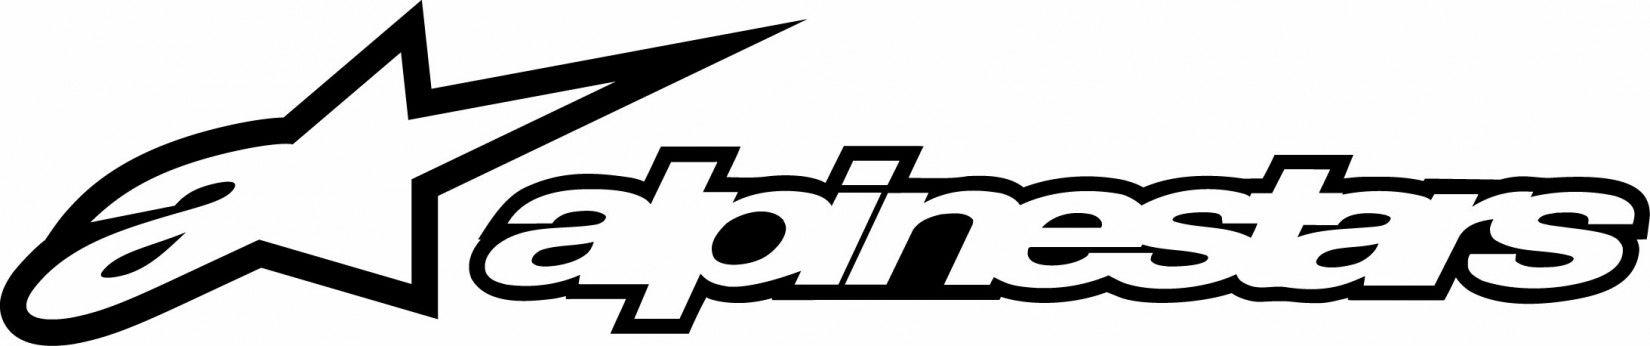 Alpinstar Logo - Alpinestars font? - forum | dafont.com